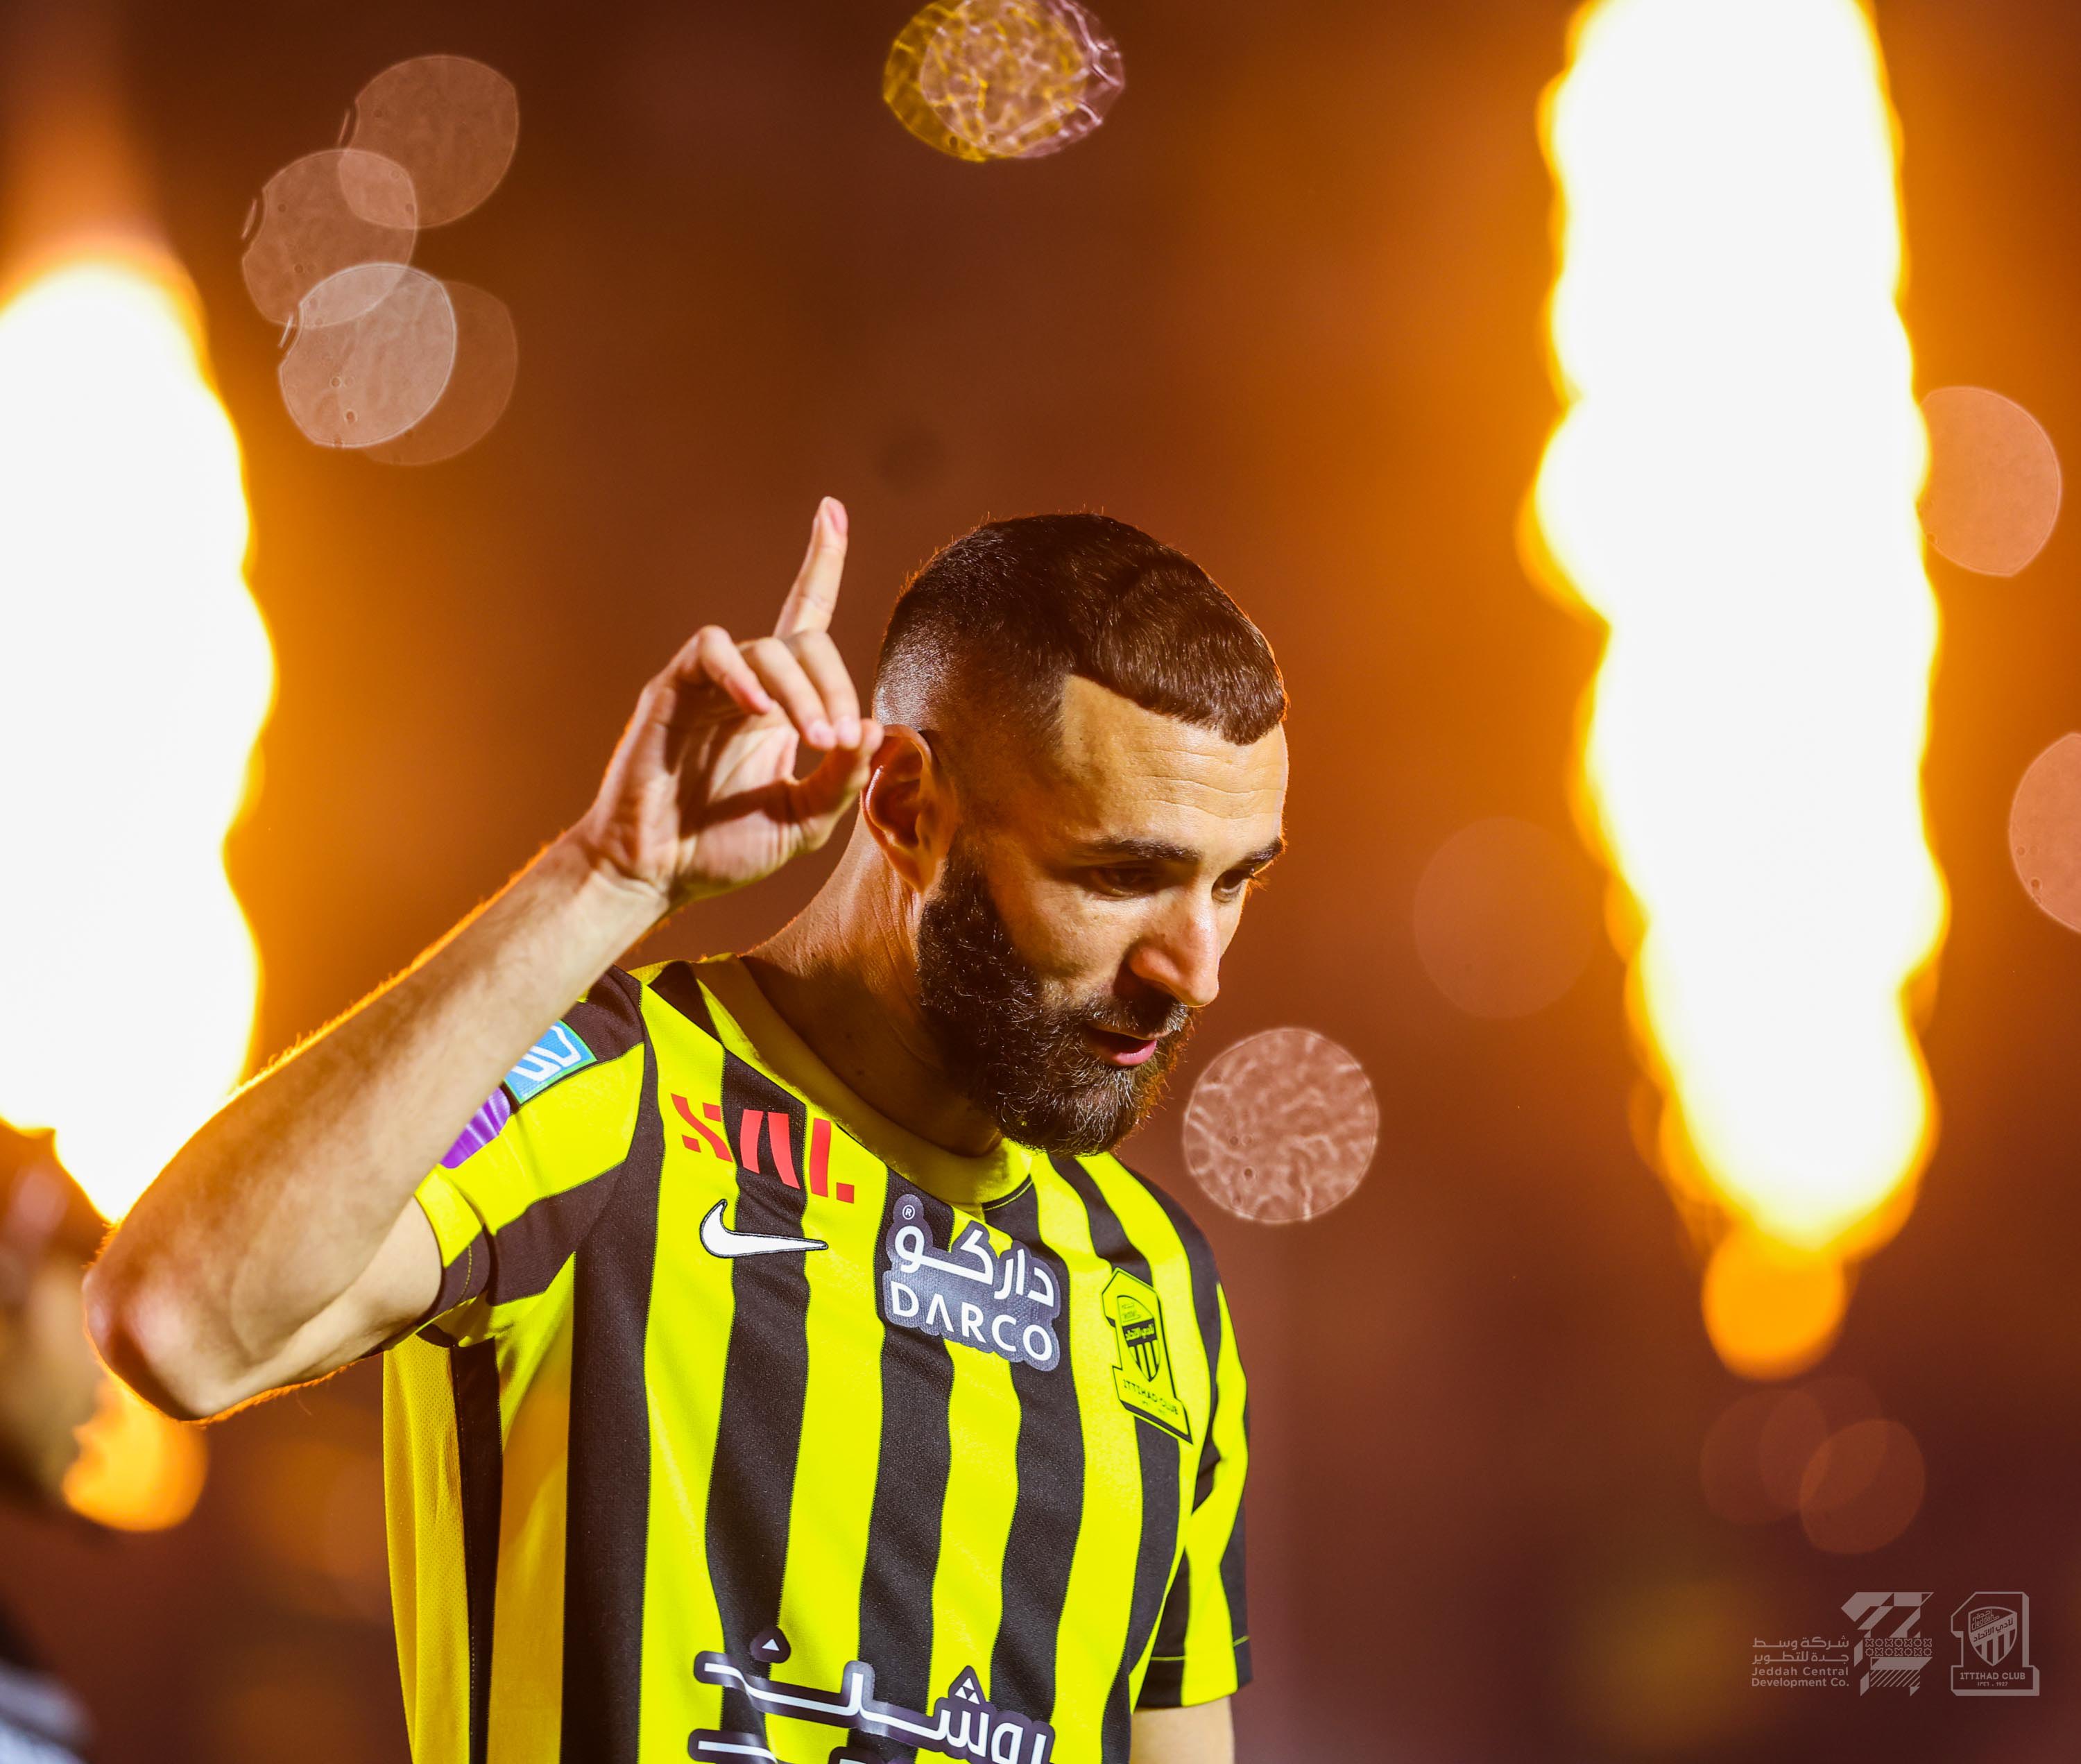 Meriah, Penyambutan Karim Benzema di AlIttihad Dihadiri Ribuan Fans